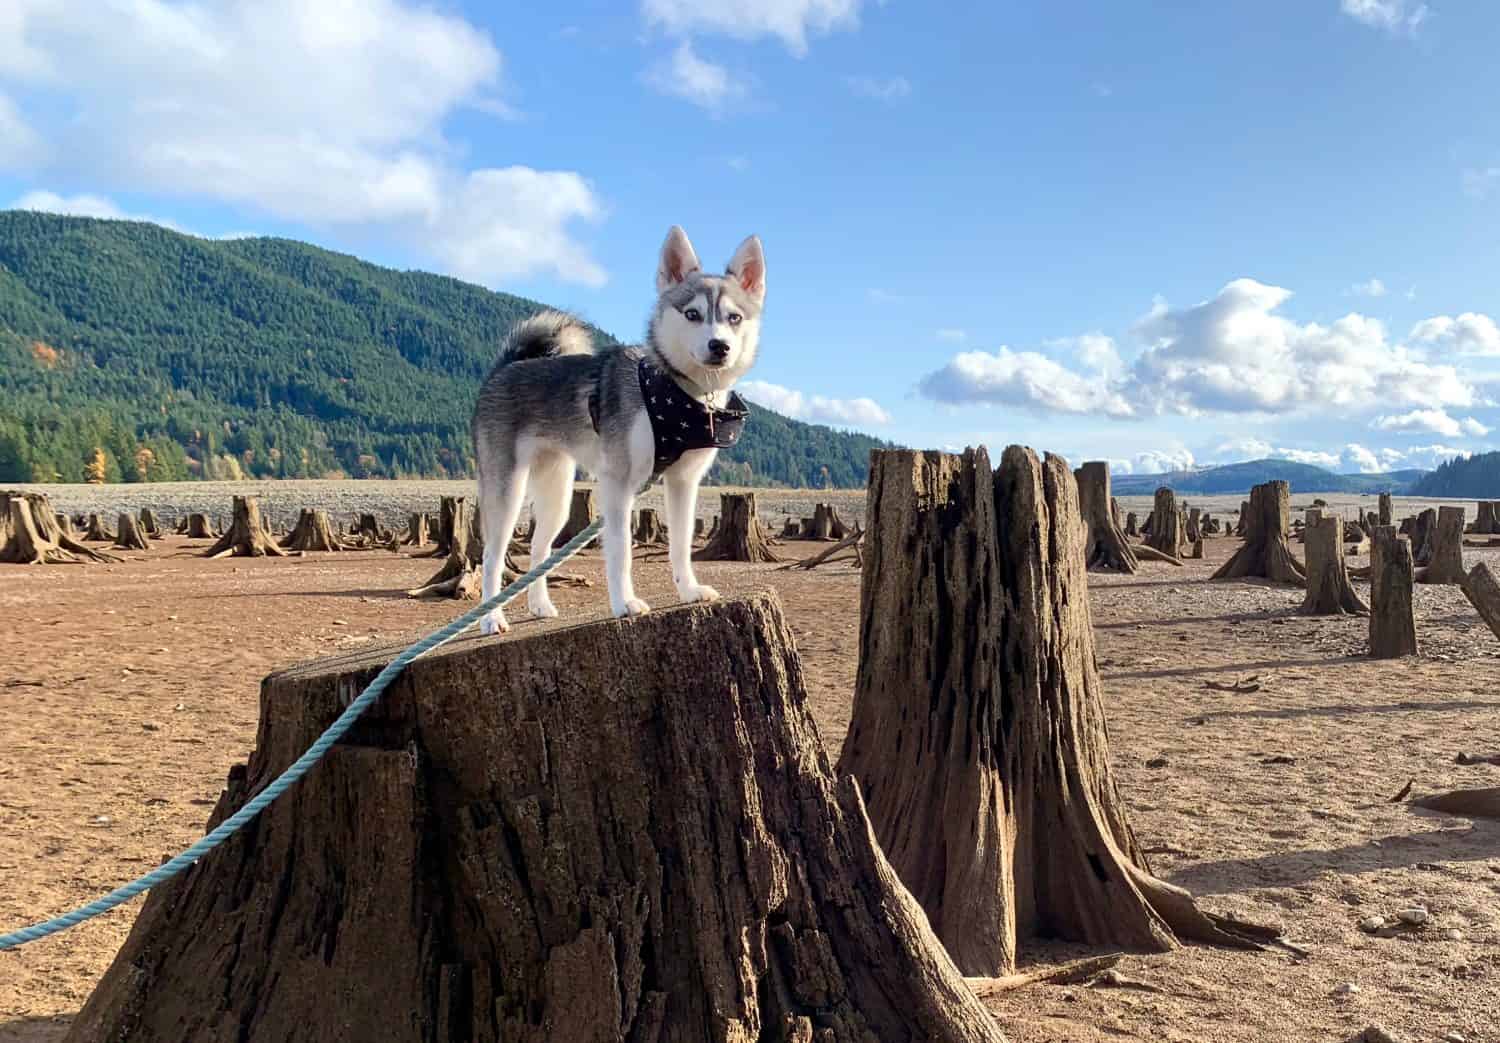 Alaskan Klee Kai (Mini Husky) puppy stands on tree stump in dry lake bed. Lake Cushman / WA / USA.